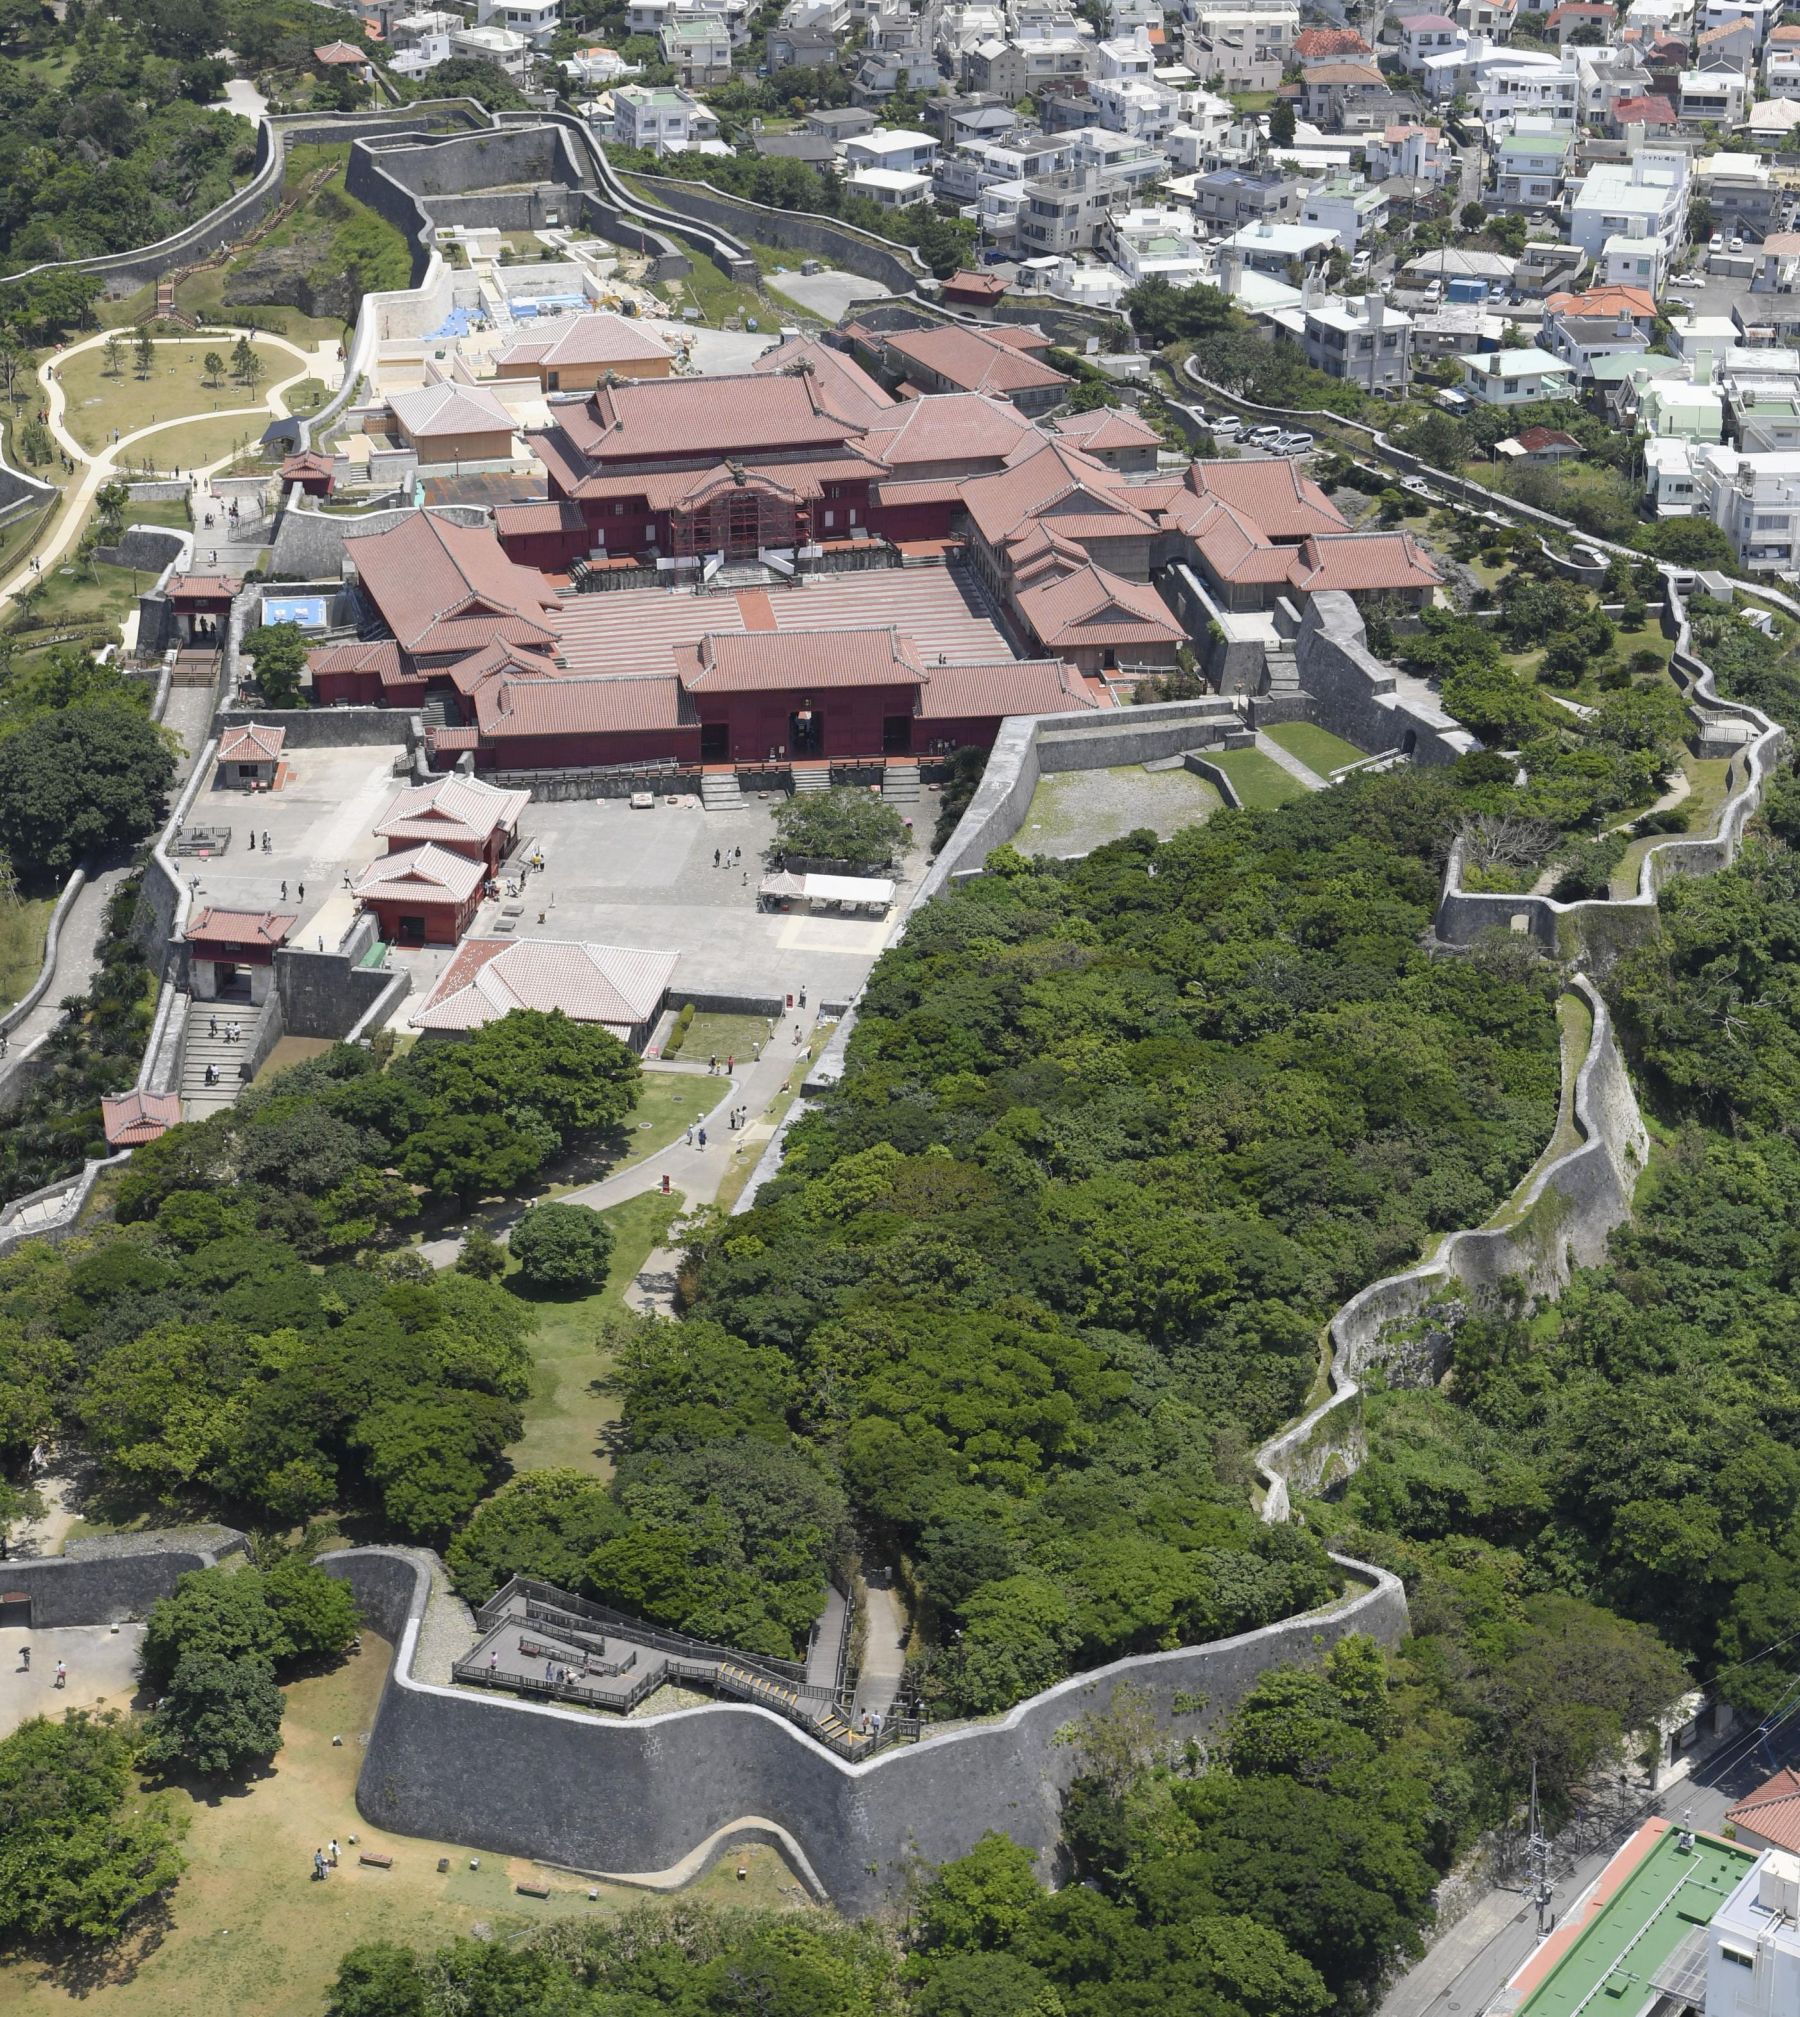 Okinawa Shuri Castle Fire in Japan